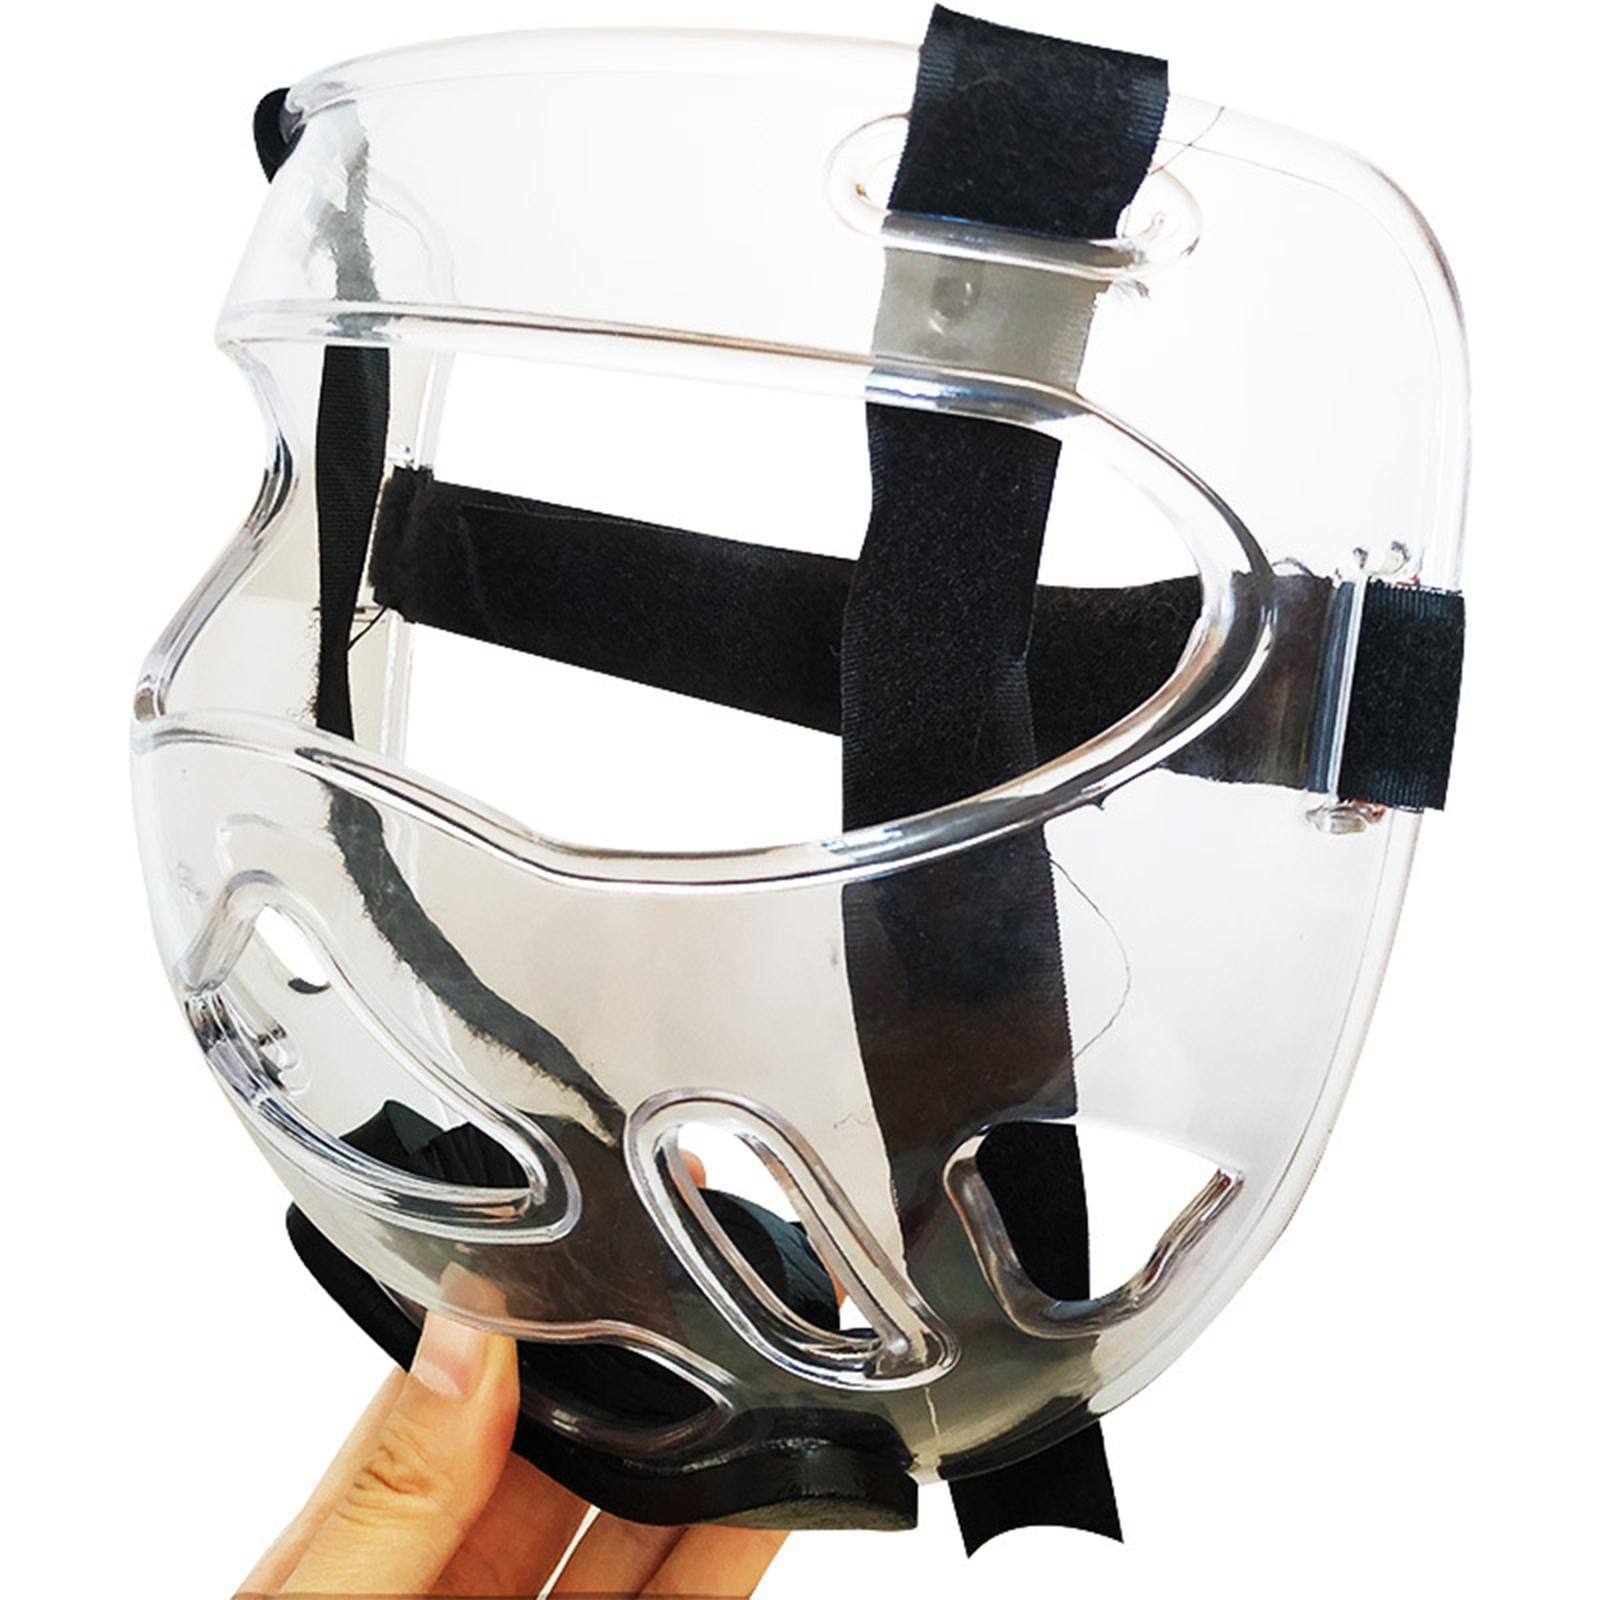 L Durable Clear Taekwondo Sanda Training Protective Face Shield Mask Gear S 